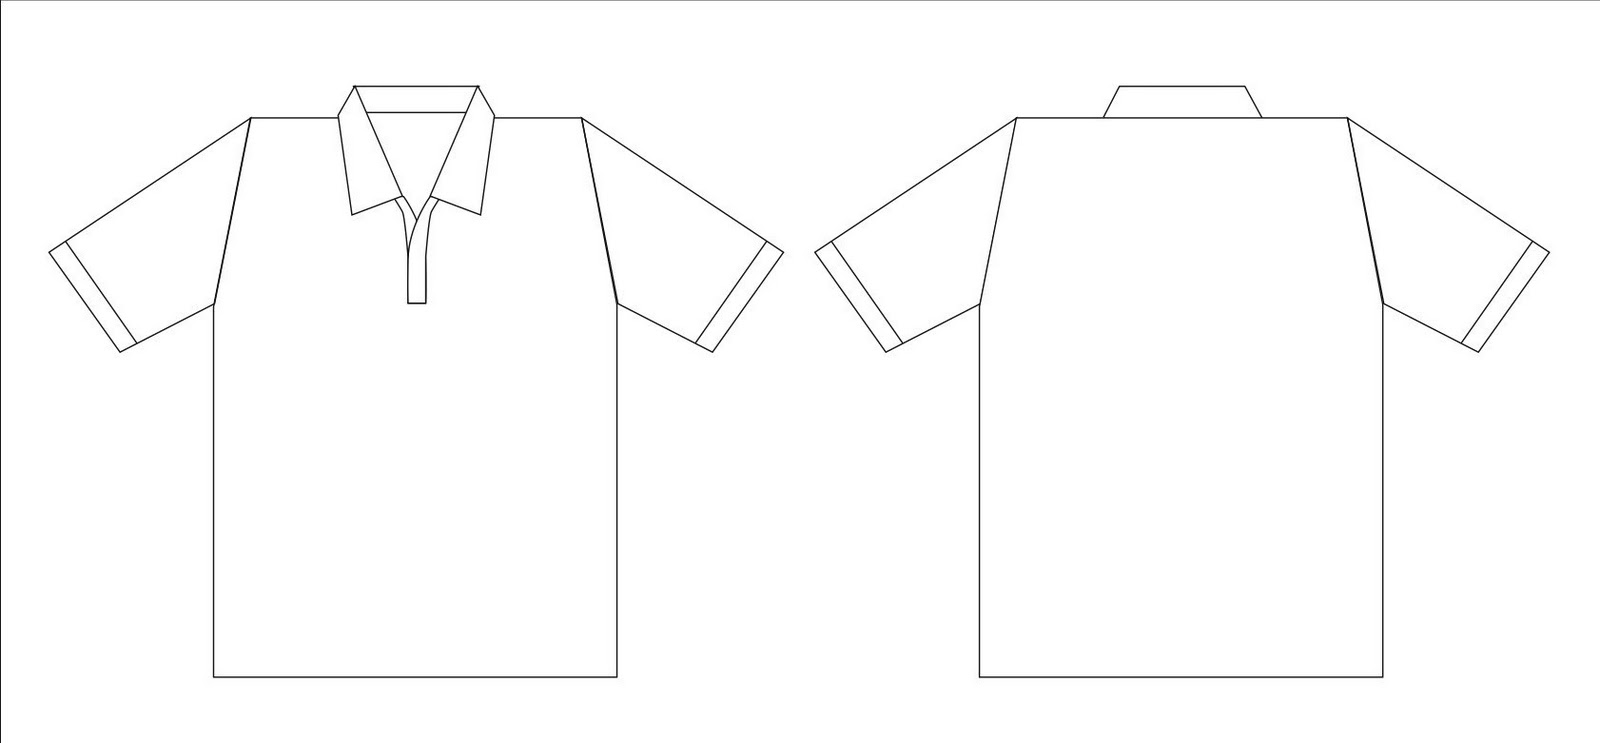 Shirt Design Template